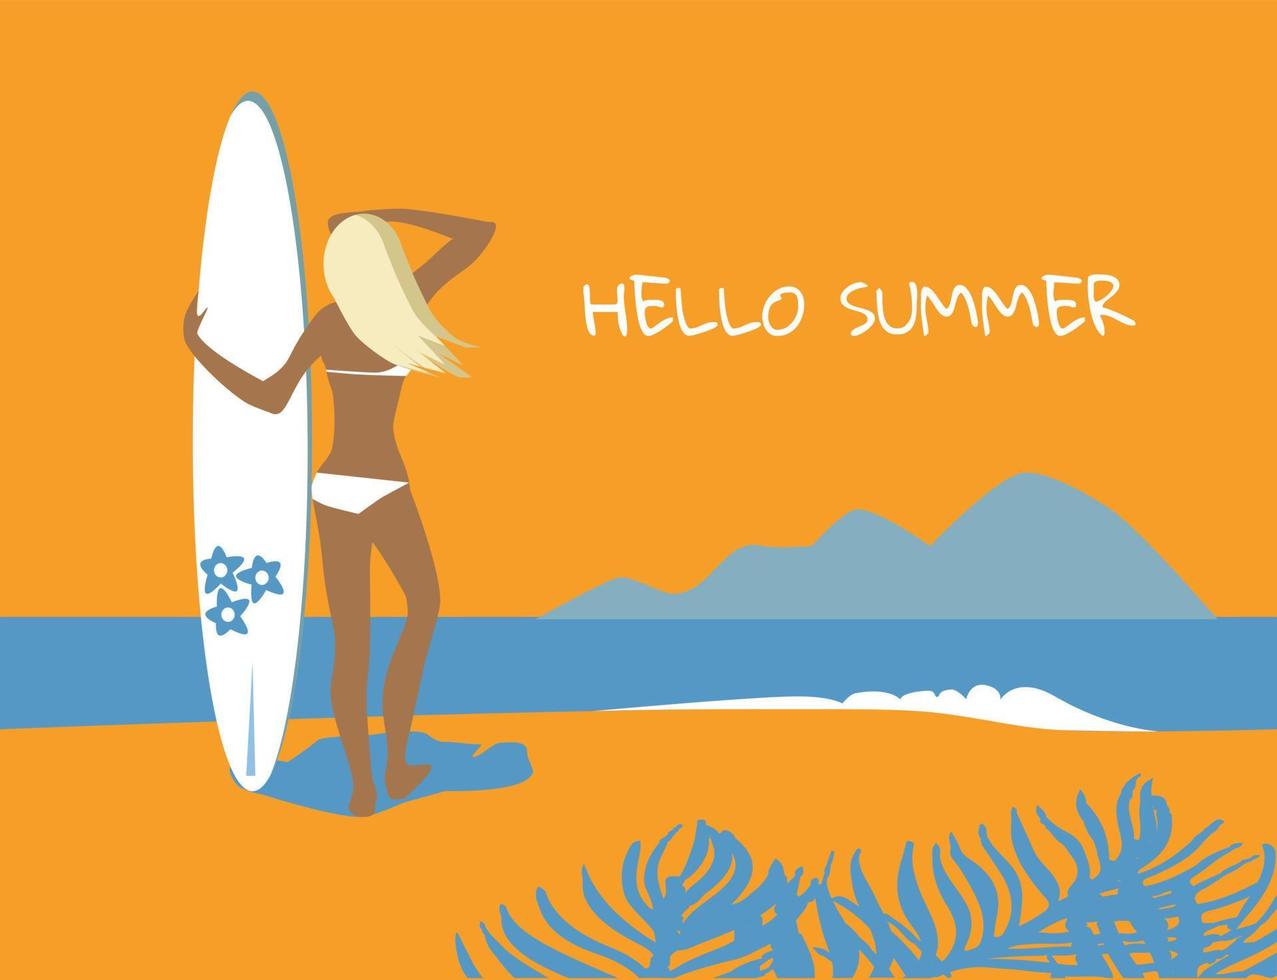 vectorillustratie - meisje op een strand, surfplank te houden. oceaan, surfers, palmen en heuvels op de achtergrond. vectorillustratie. vector